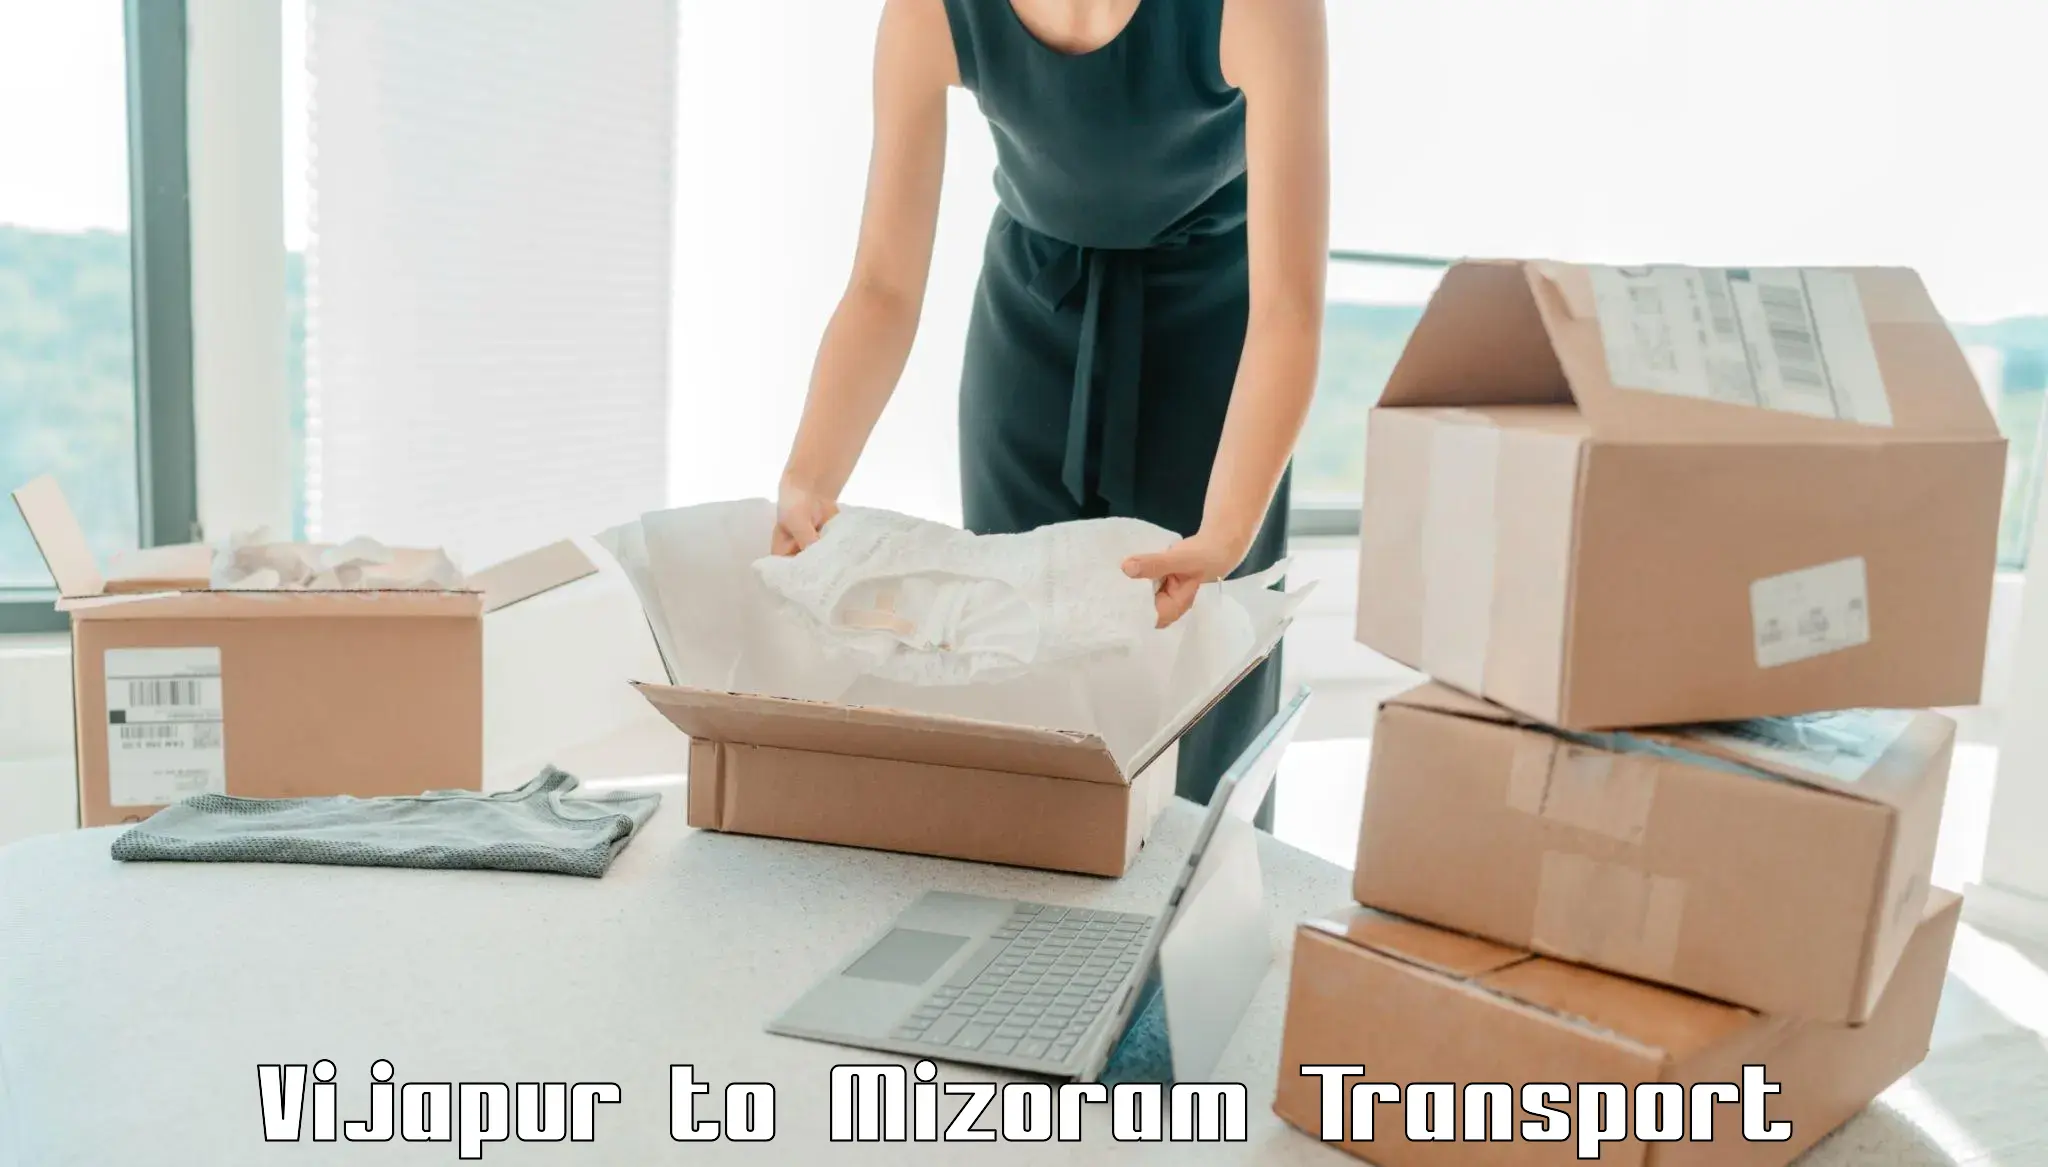 Cargo transportation services Vijapur to Lunglei